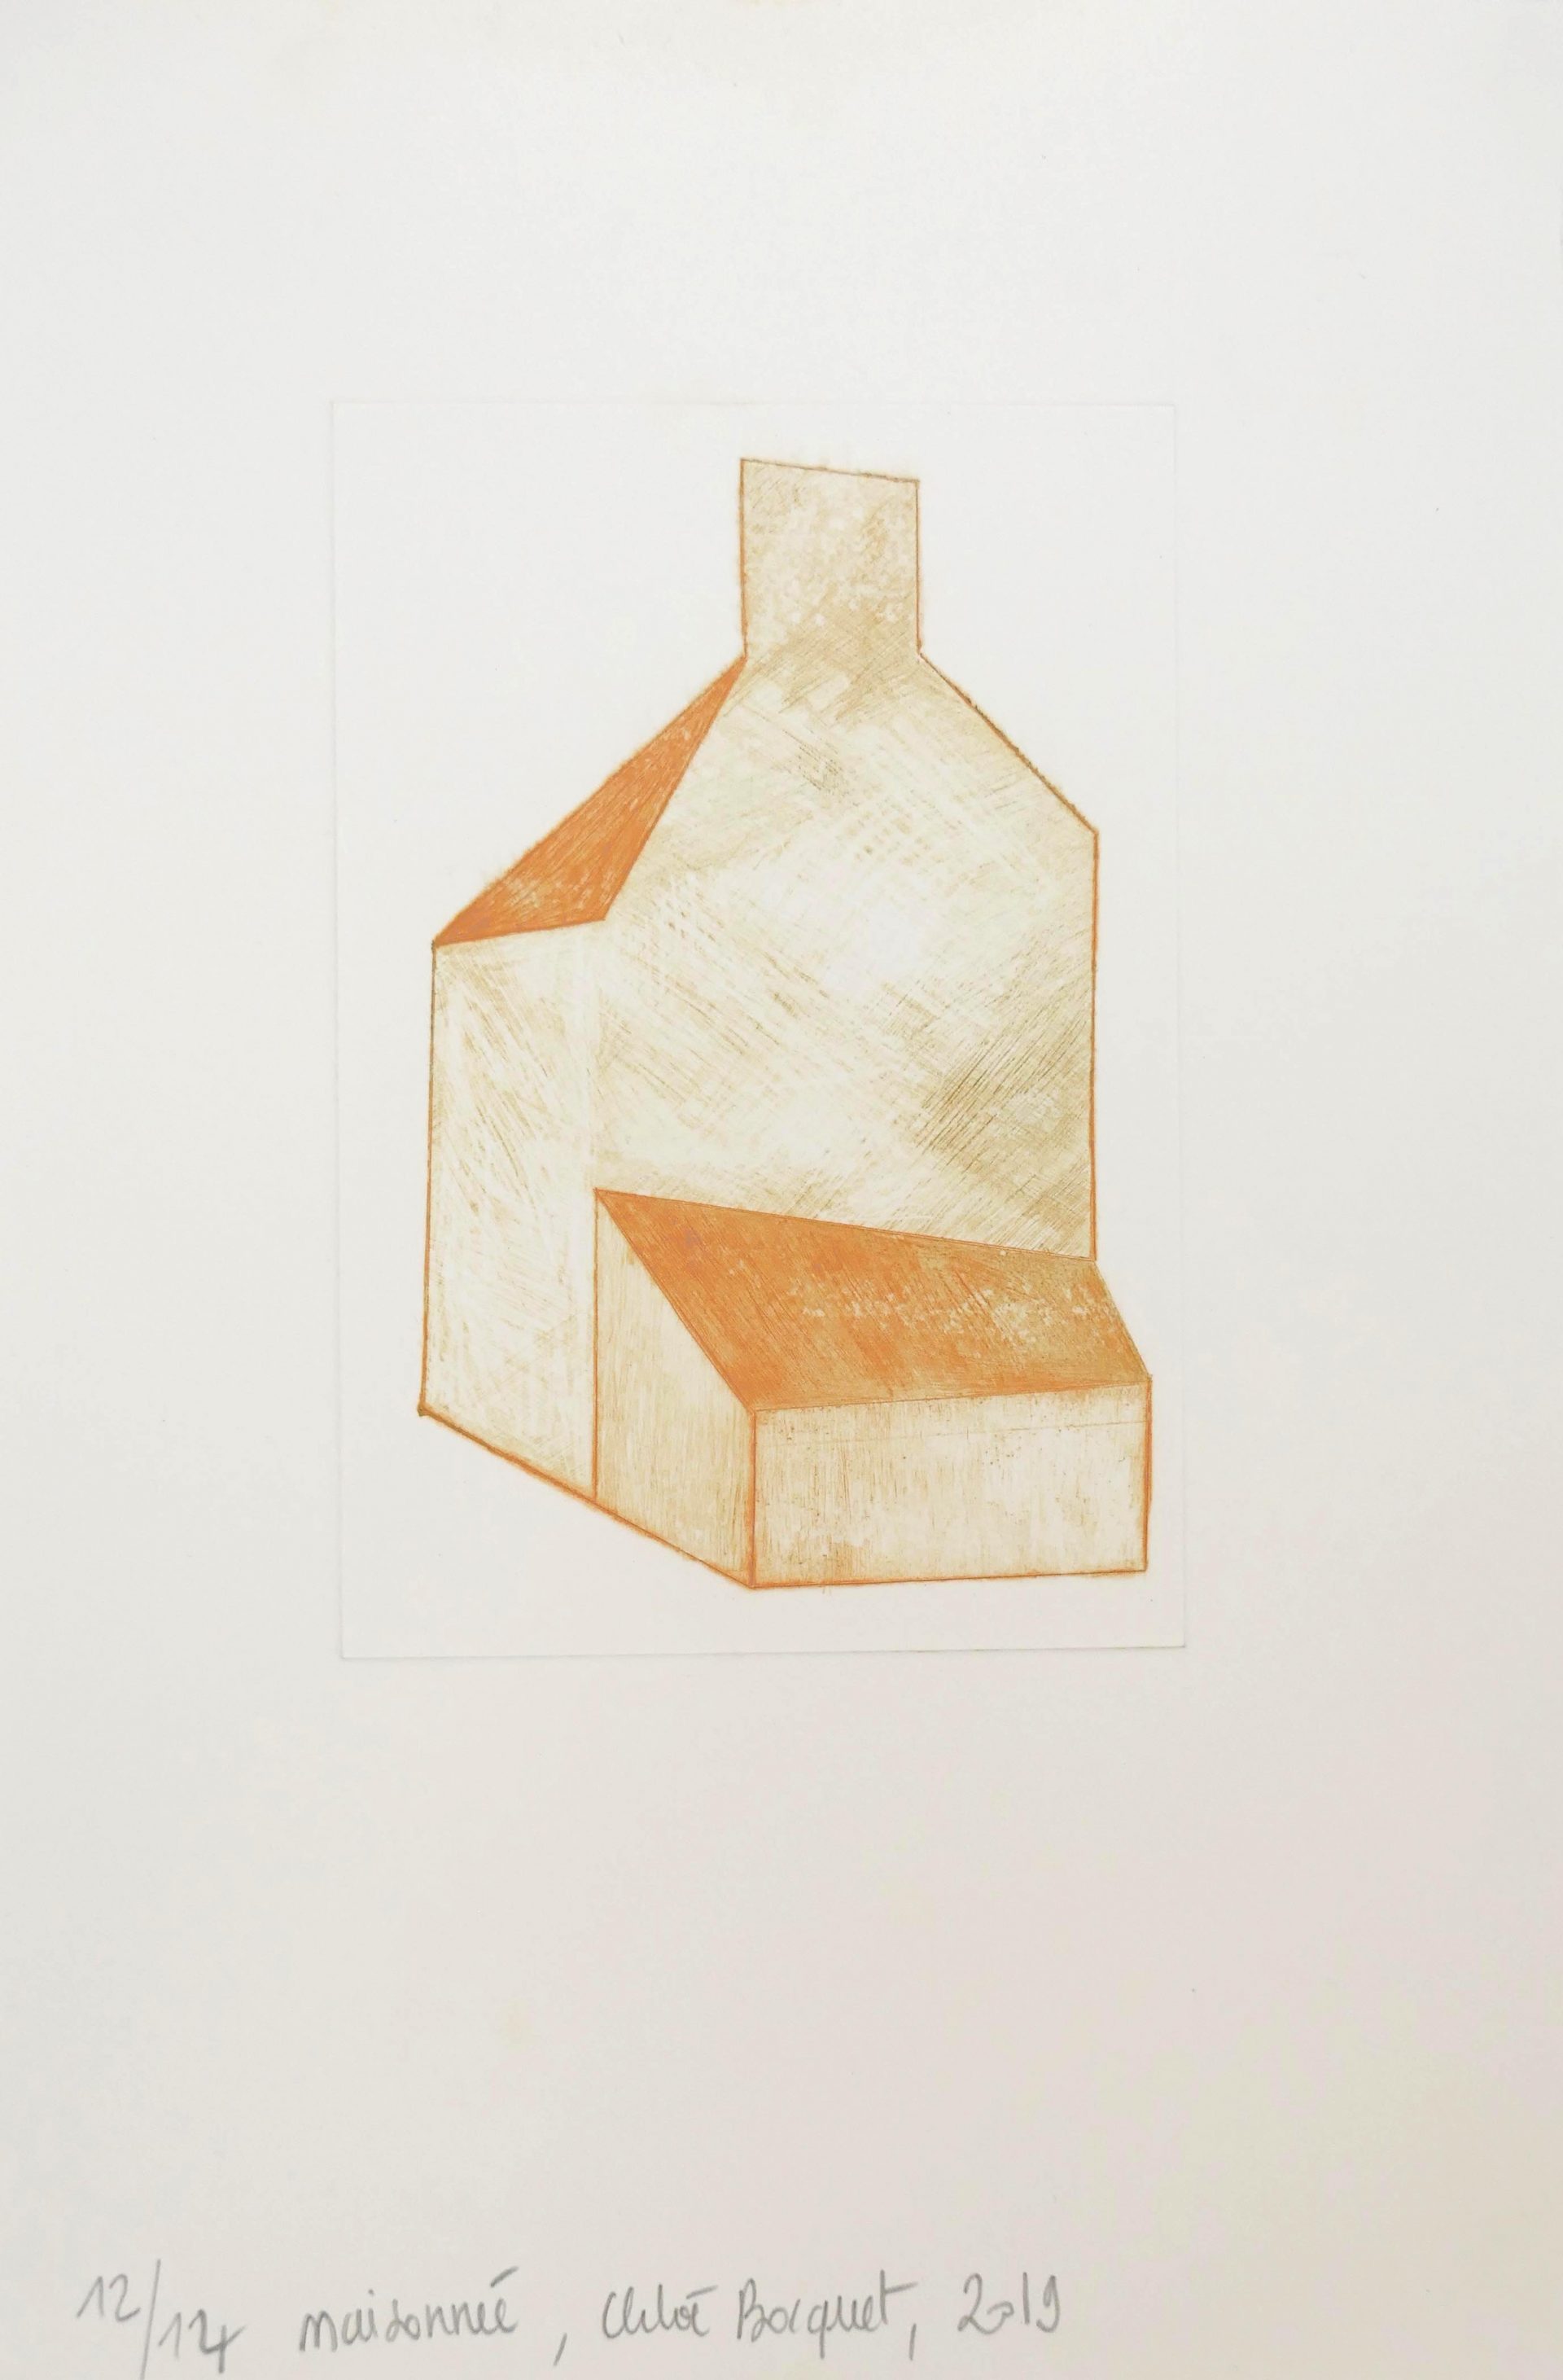 Maisonnée 1, 2019, drypoint, image size 15x10 cm, paper size 28,5x19 cm, edition of 14